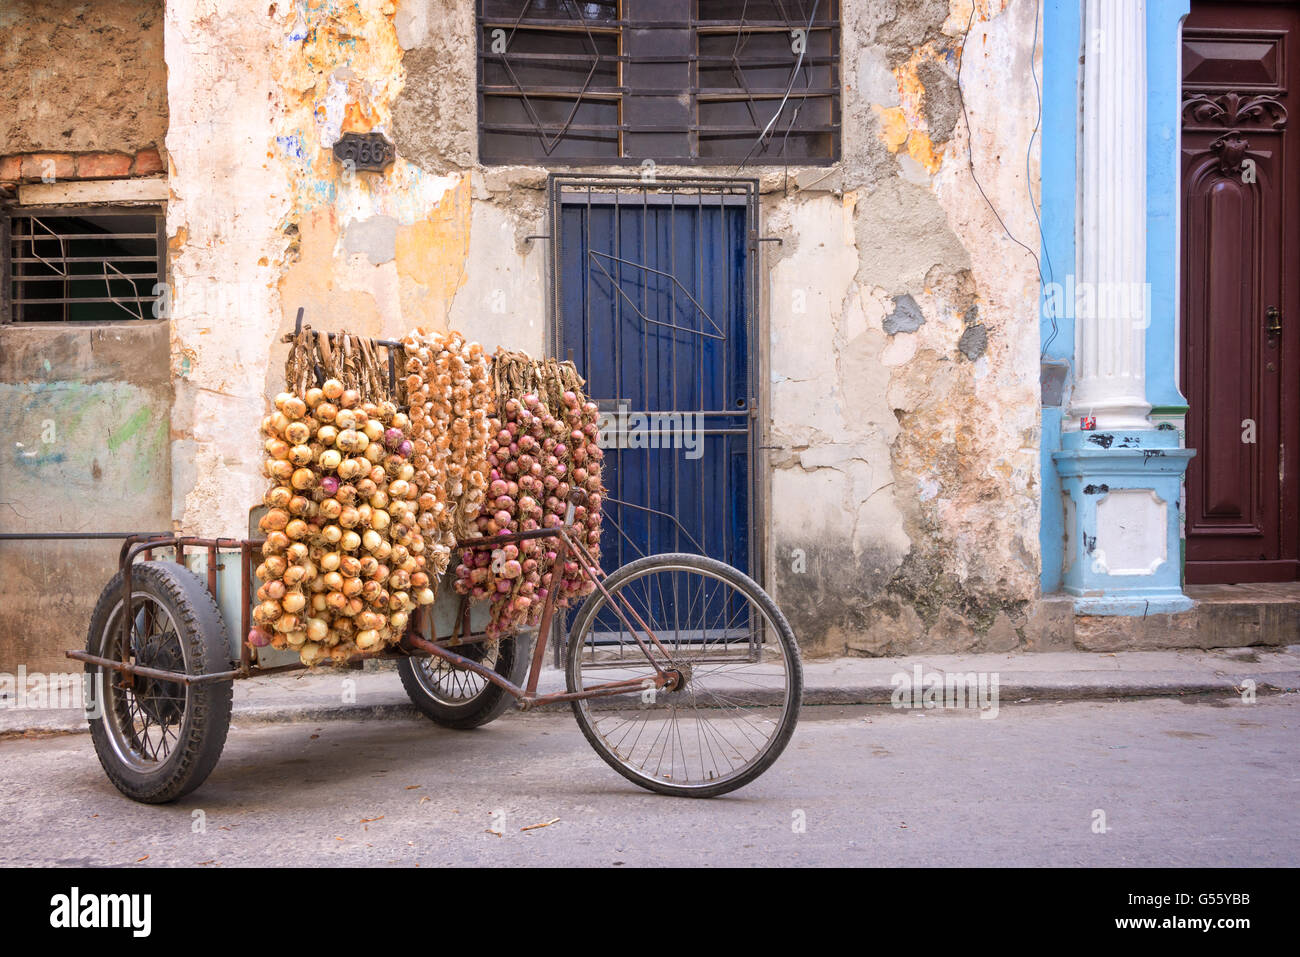 Onions seller in a street of Old Havana, Cuba Stock Photo